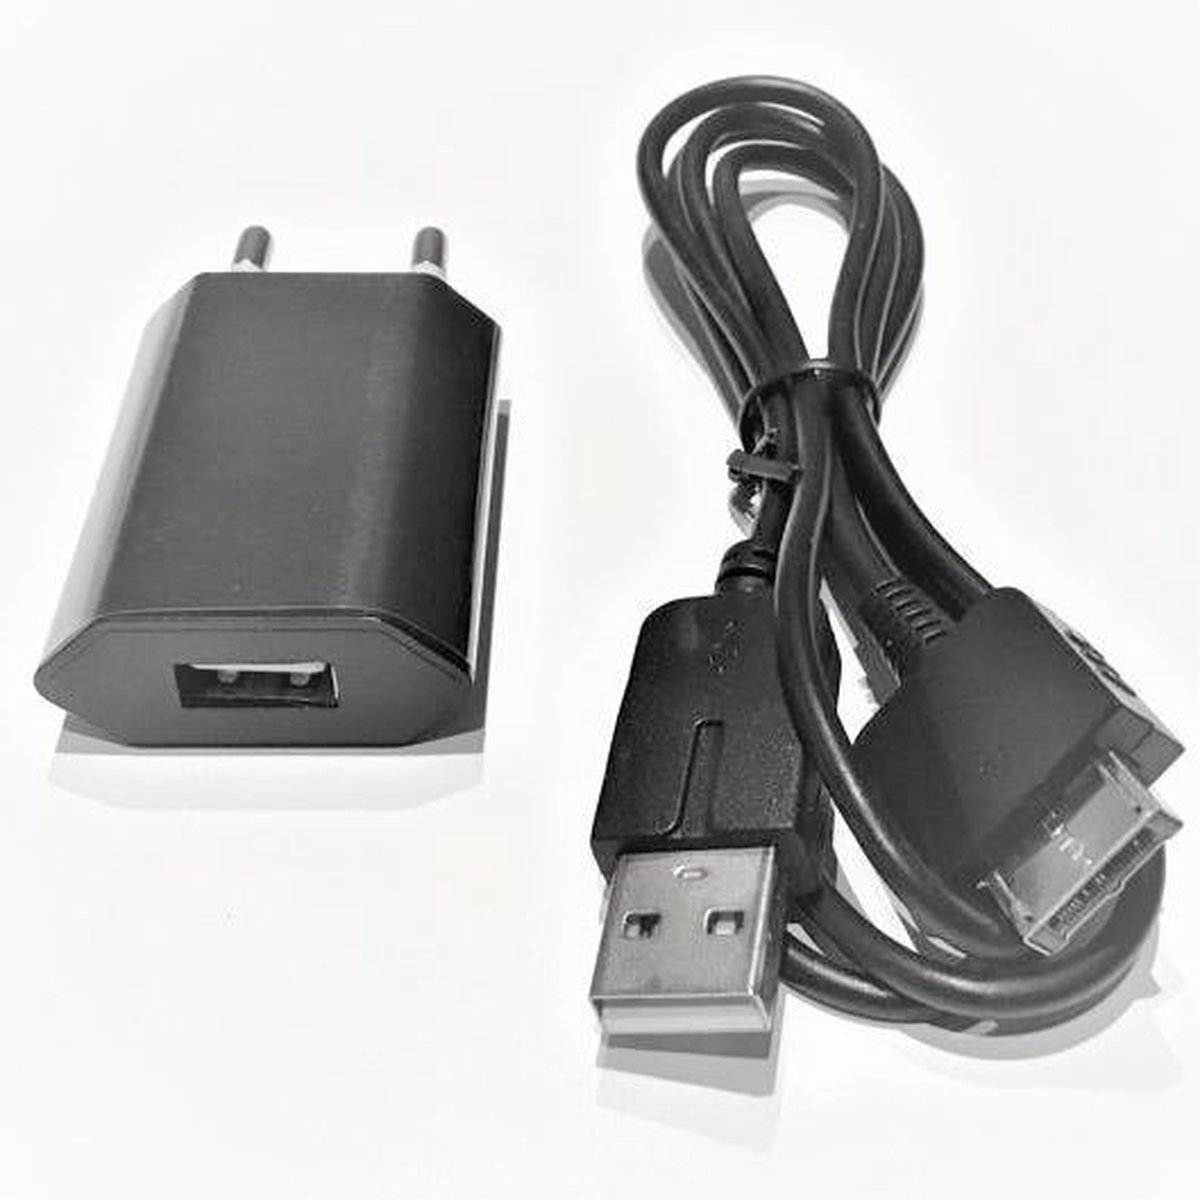 Chargeur USB PS Vita + câble de données | bol.com